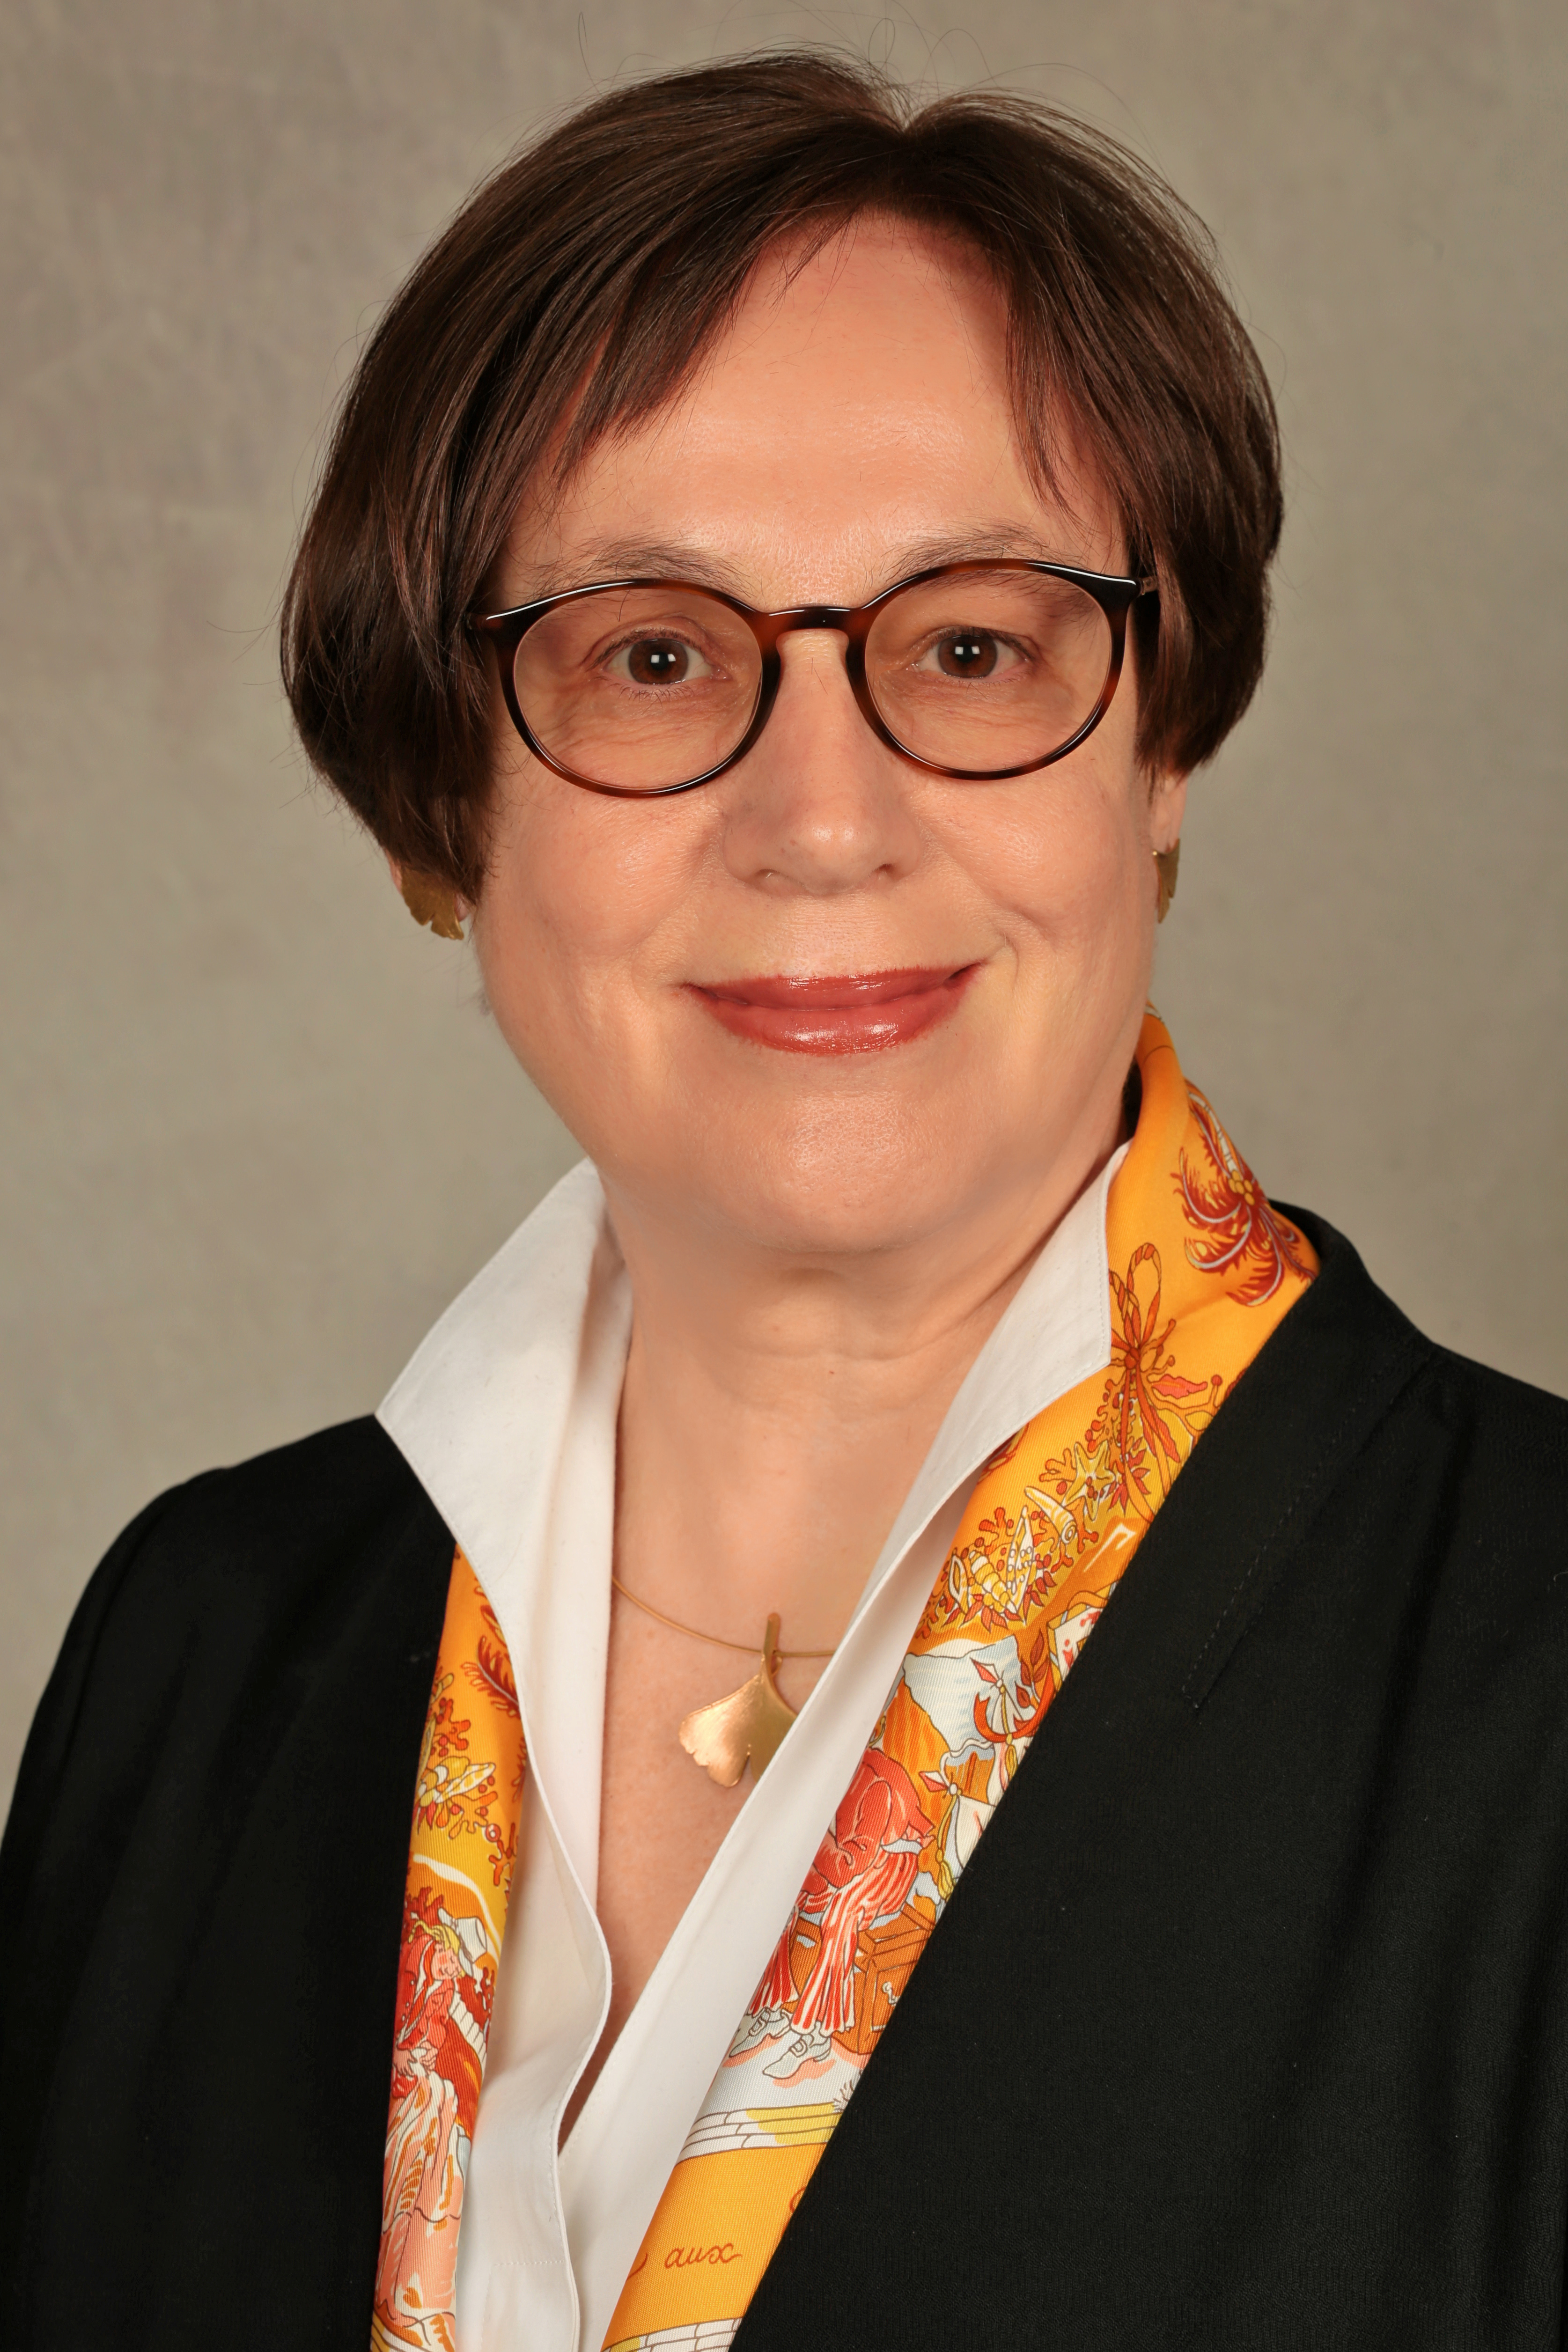 Dr. Ingrid Kruessmann